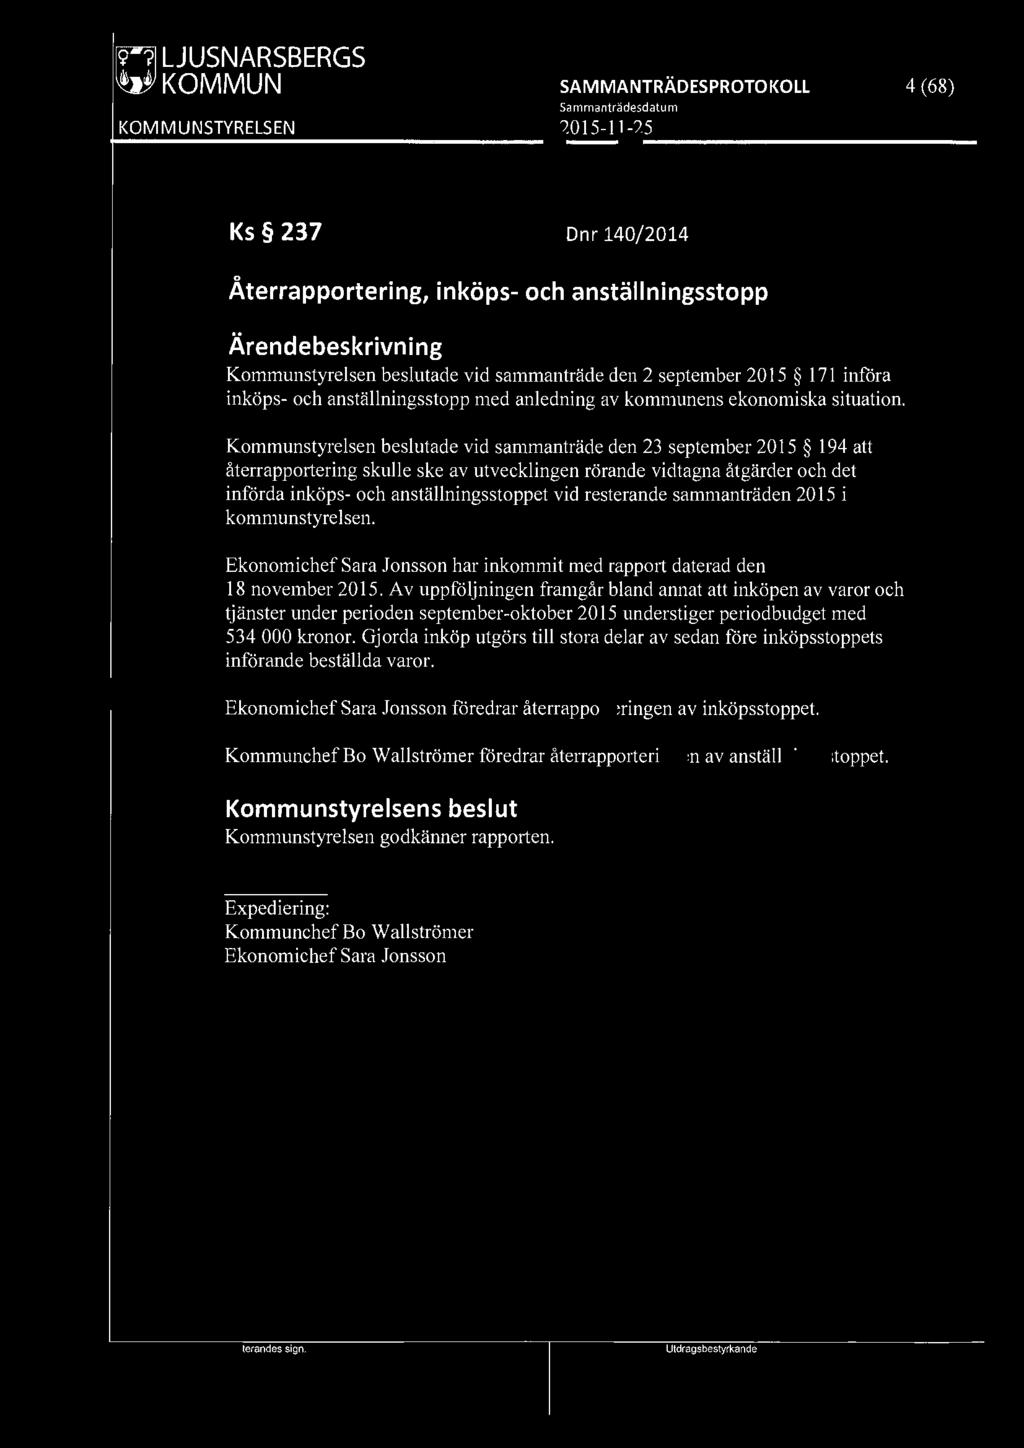 fffil LJUSNARSBERGS WJ KOMMUN 4 (68) Ks 237 Dnr 140/2014 0 Aterrapportering, inköps- och anställningsstopp Kommunstyrelsen beslutade vid sammanträde den 2 september 2015 171 införa inköps- och